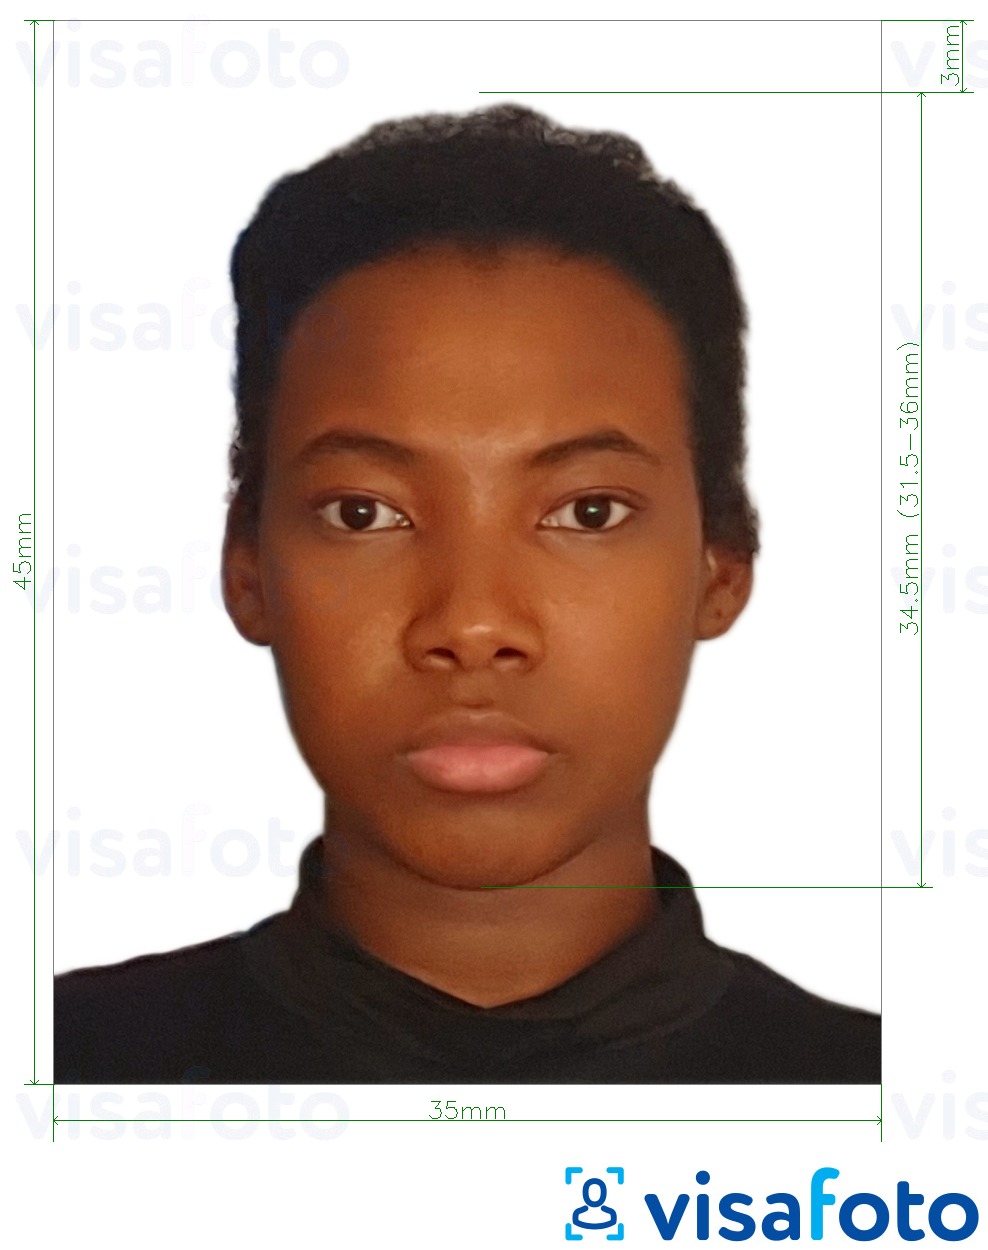 Ejemplo de foto para Pasaporte de Burkina Faso 4.5x3.5 cm (45x35 mm) con la especificación del tamaño exacto